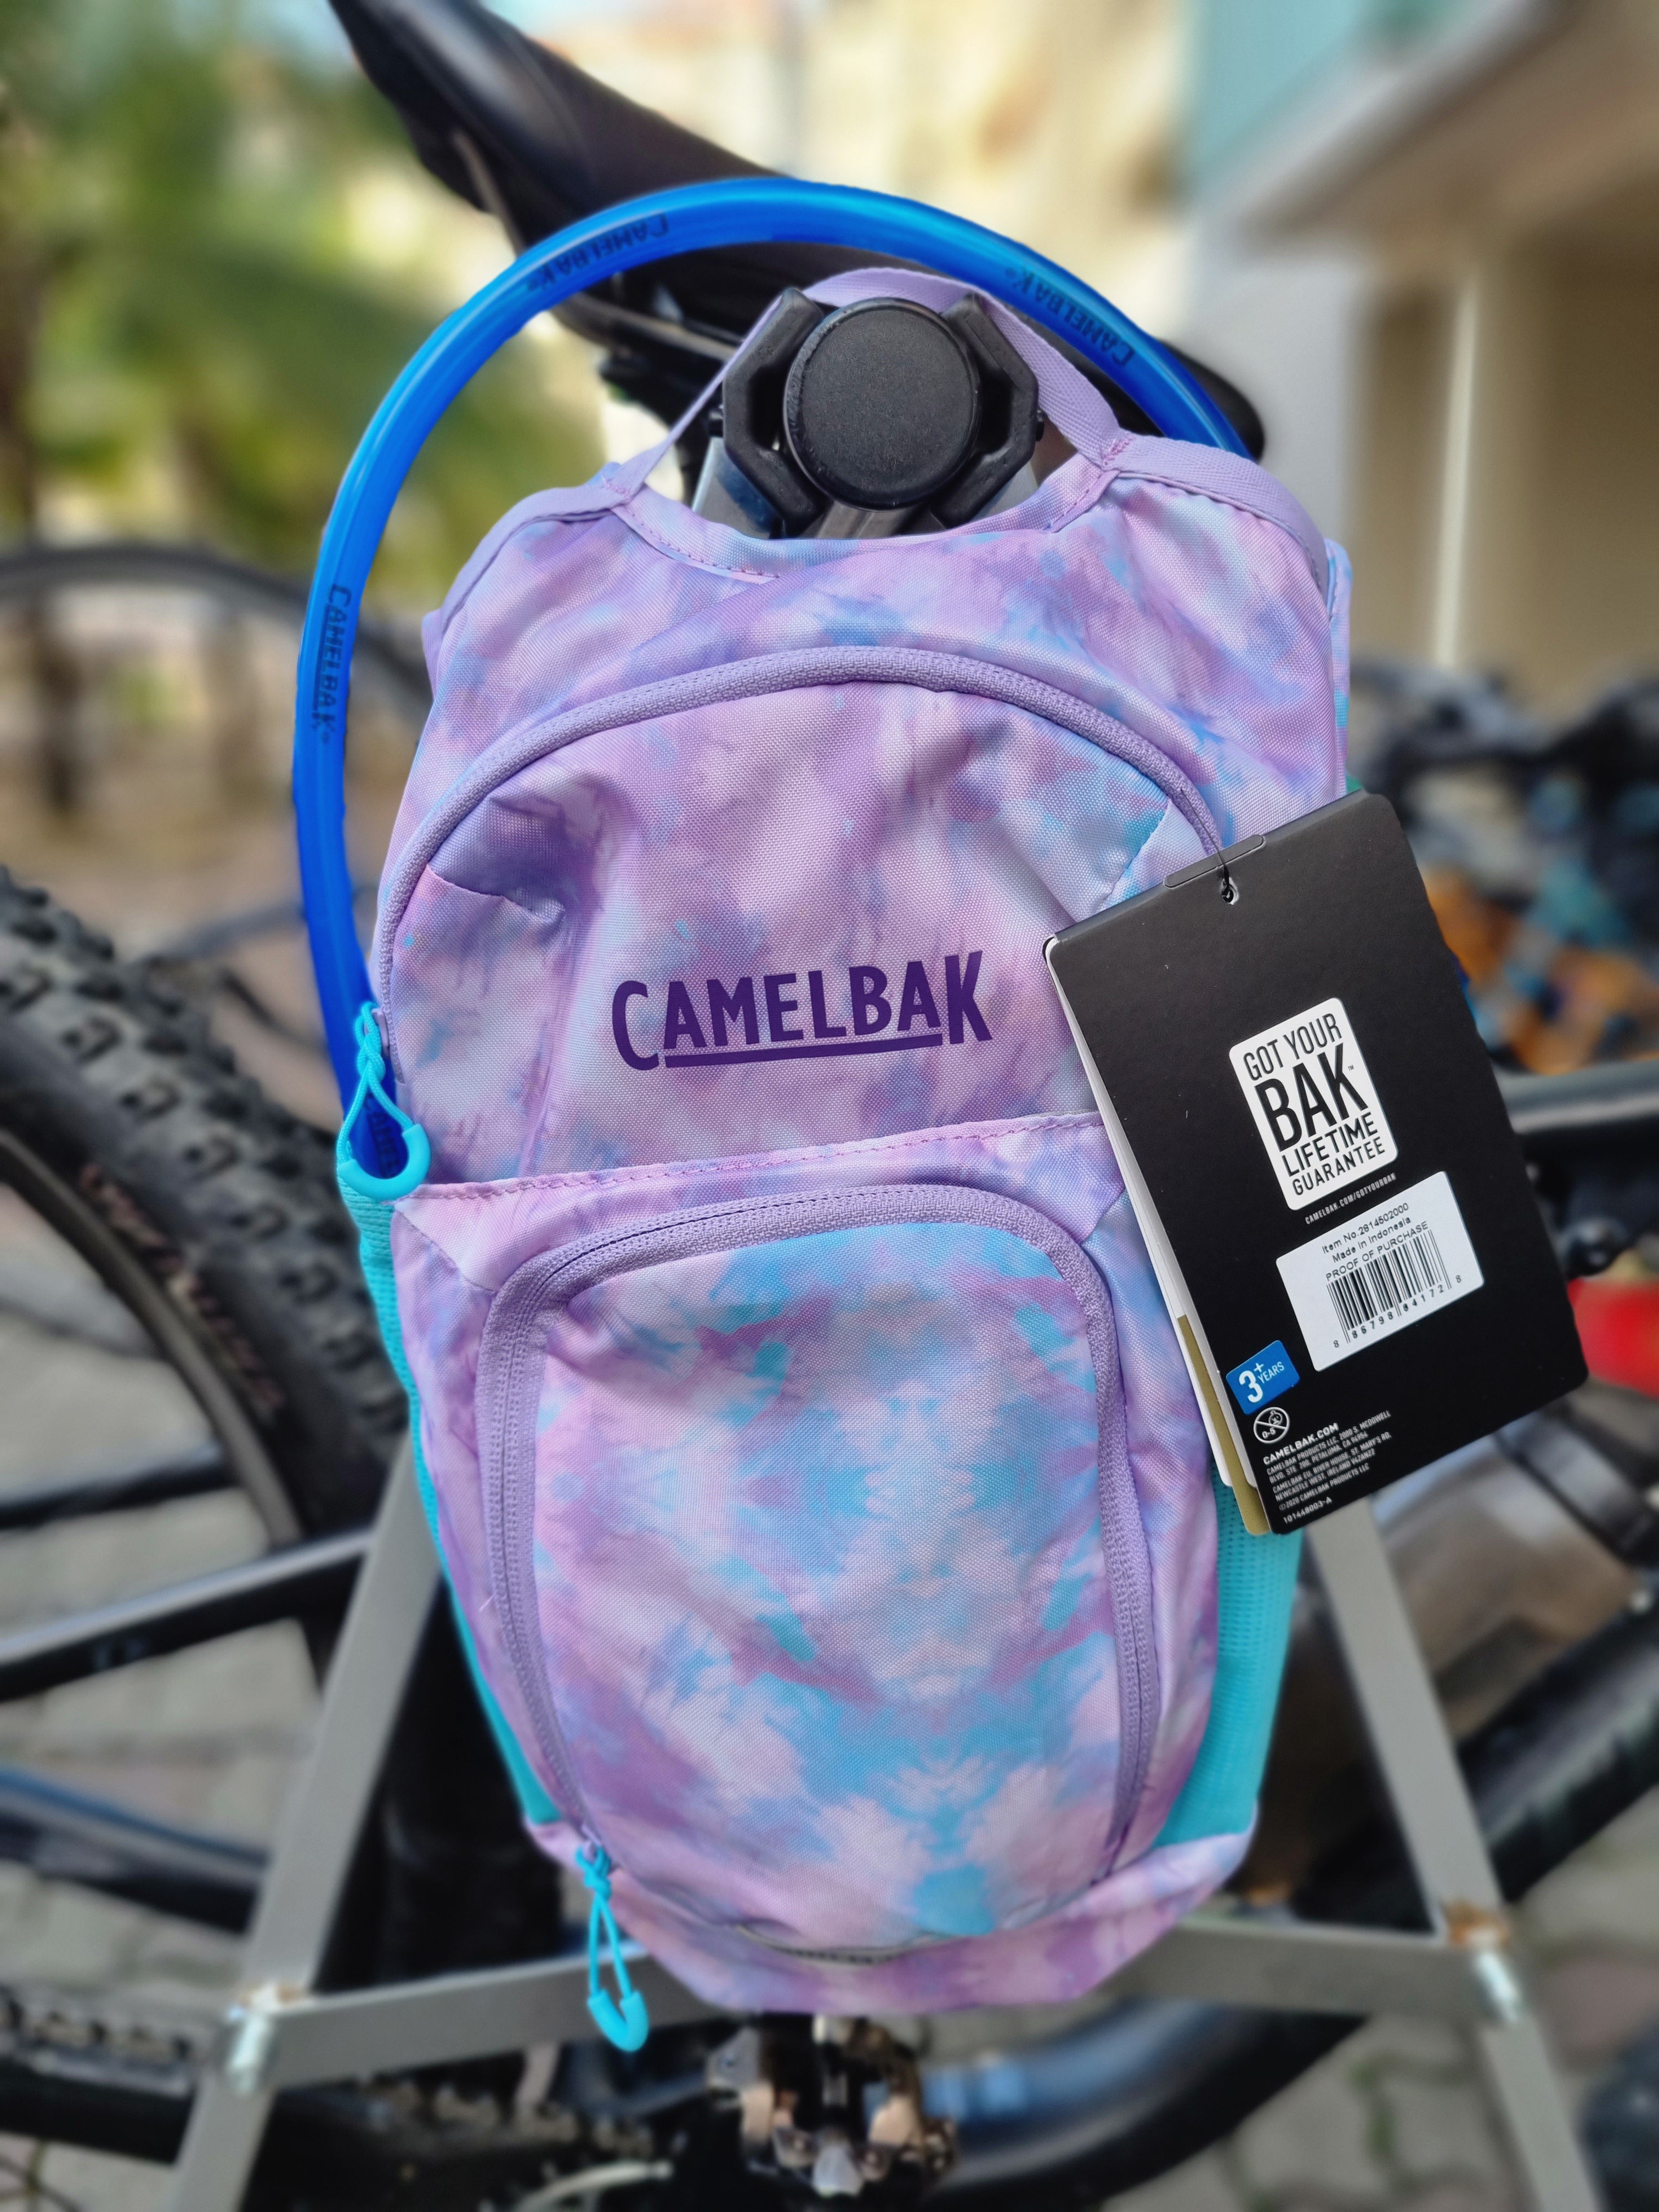 Camelbak Bike Hydration Pack –